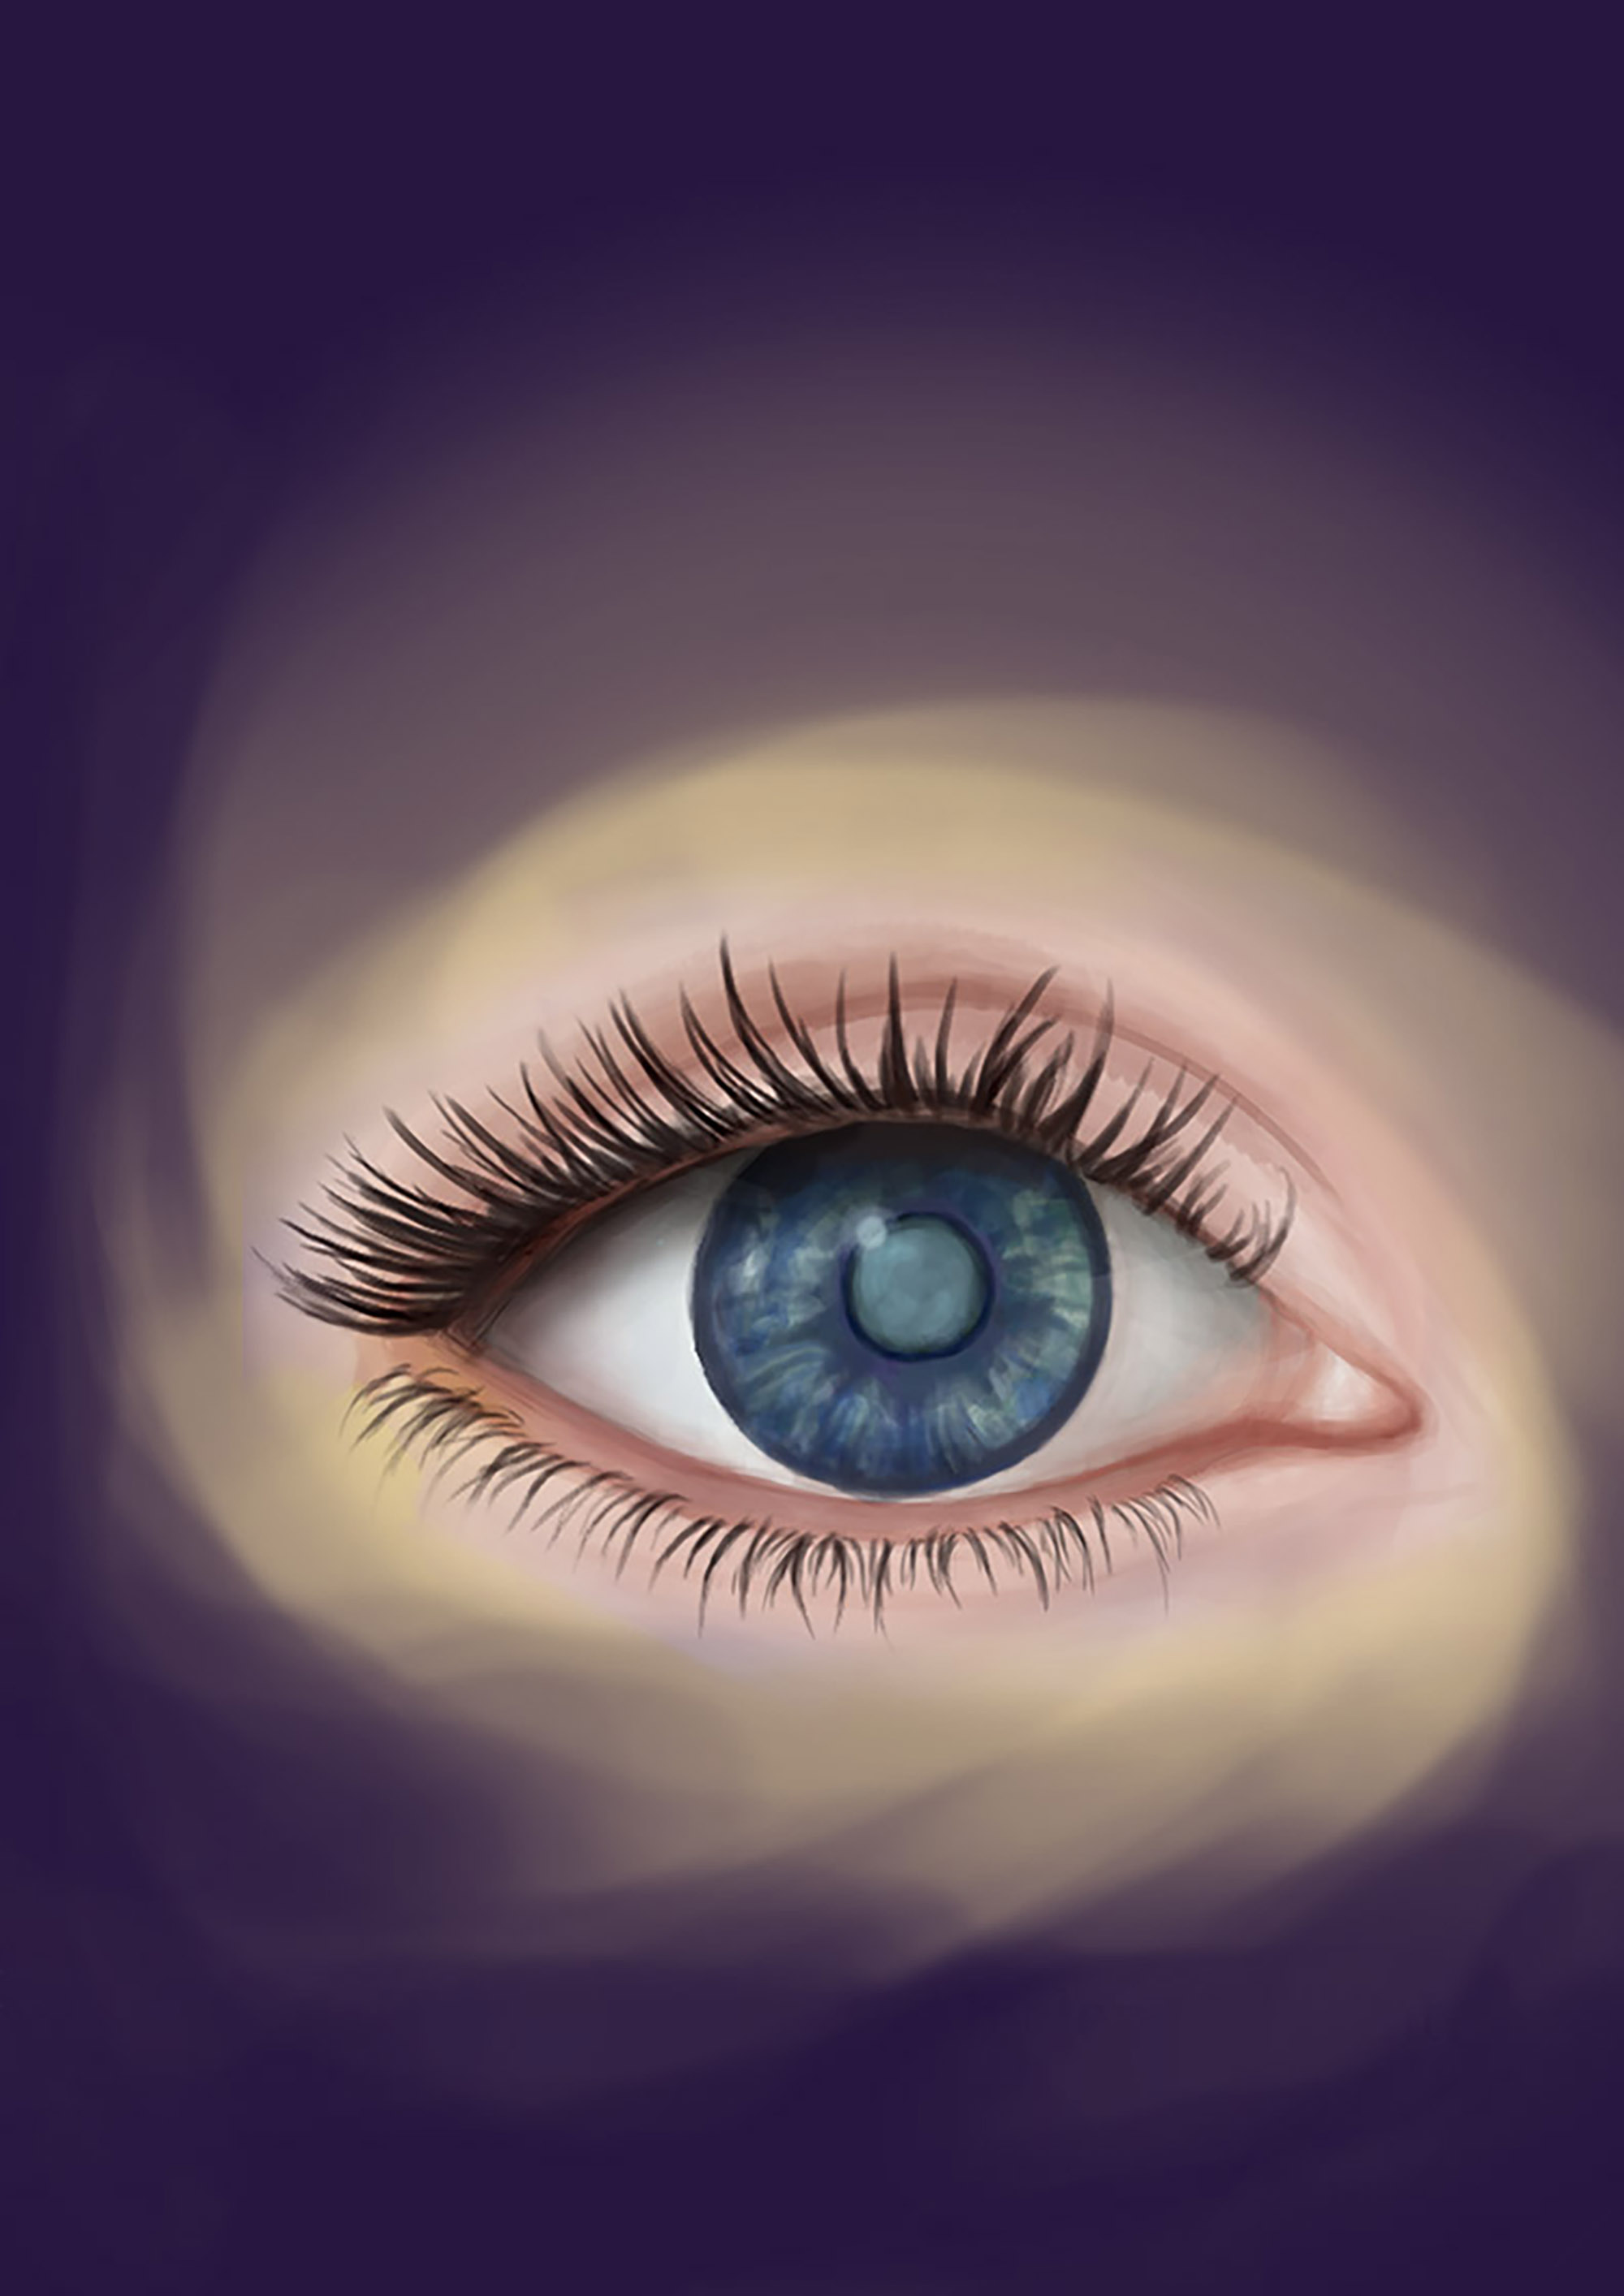 Cataract, Illustration